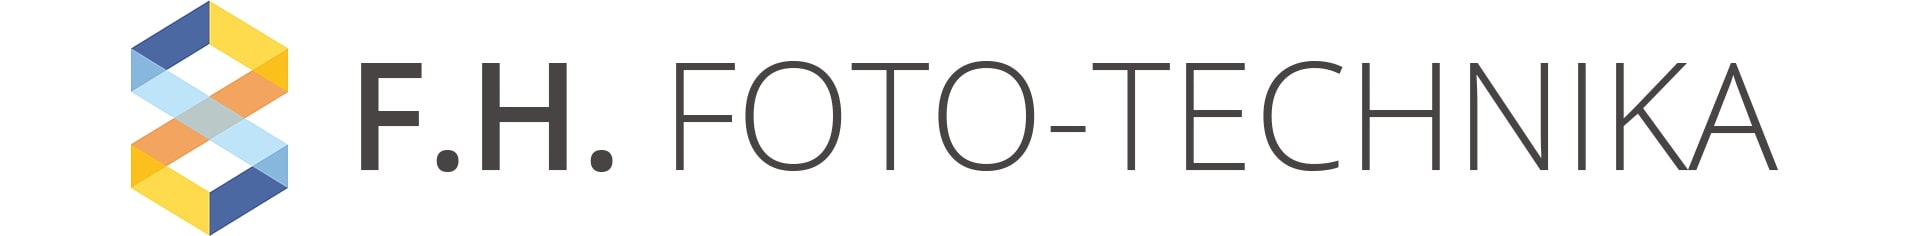 Foto-Technika - logo